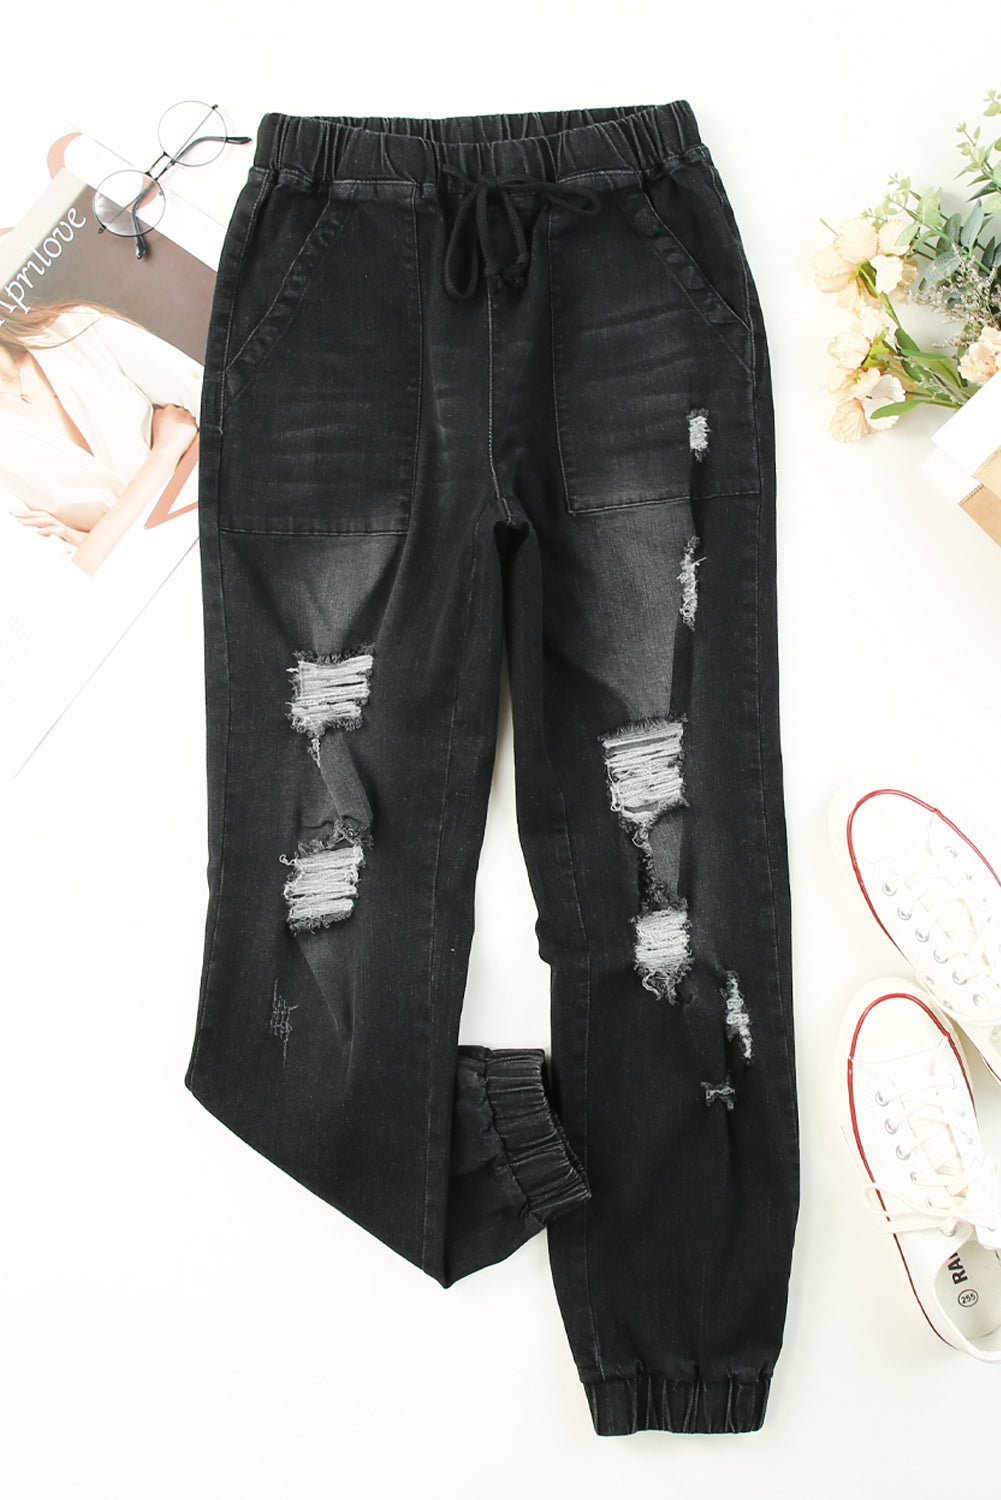 Black Pocketed Distressed Denim Jean Jeans JT's Designer Fashion